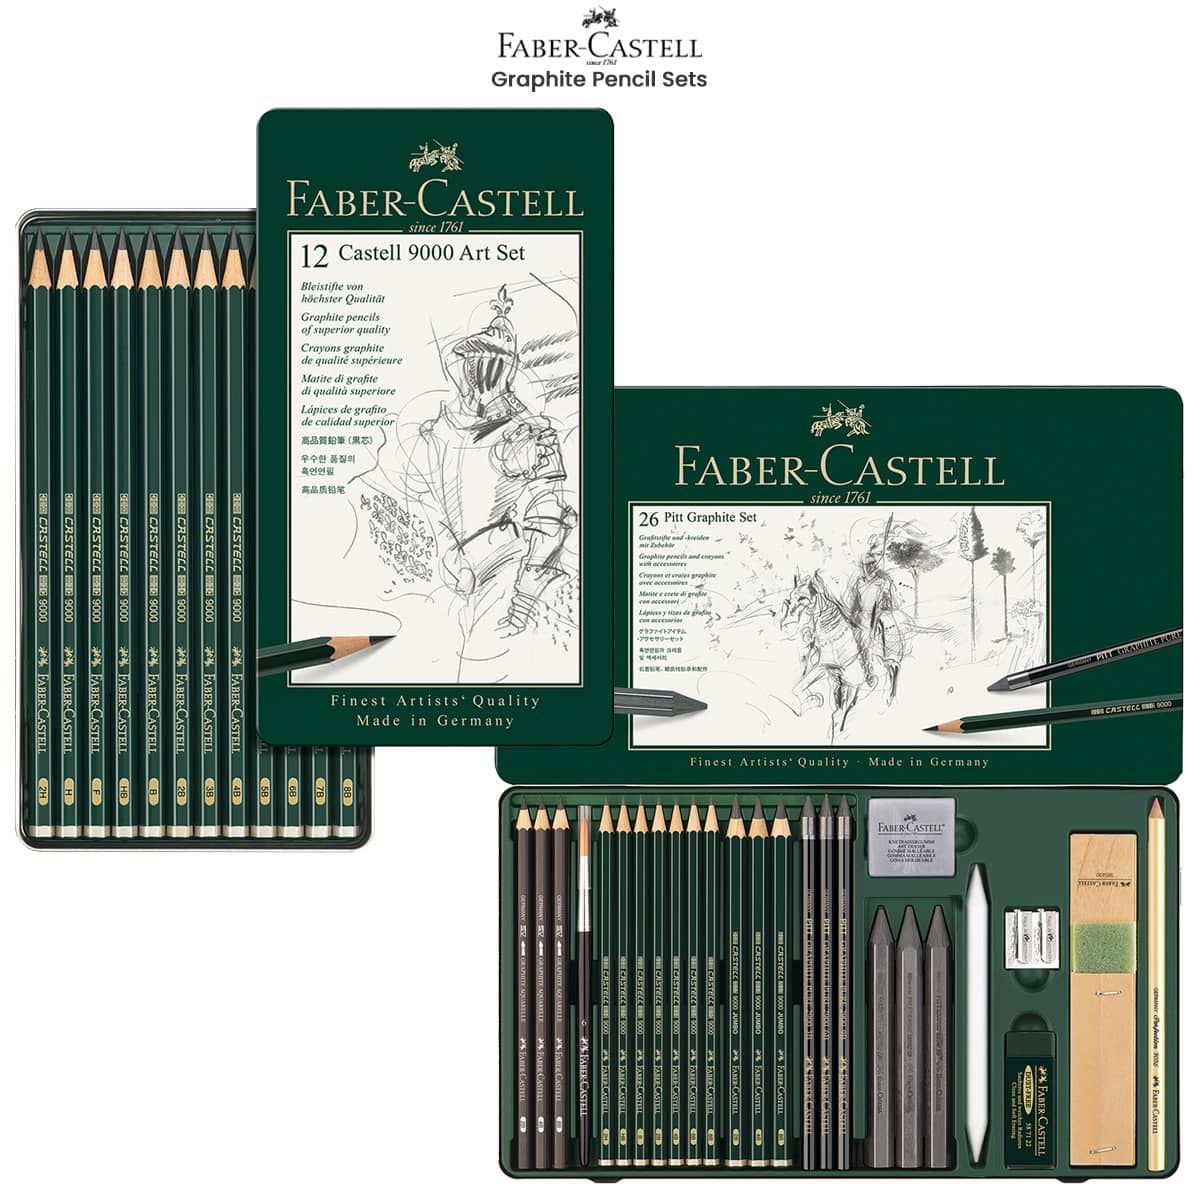 Faber Castell Art Eraser Dust Free - Art Supplies materials and equipment